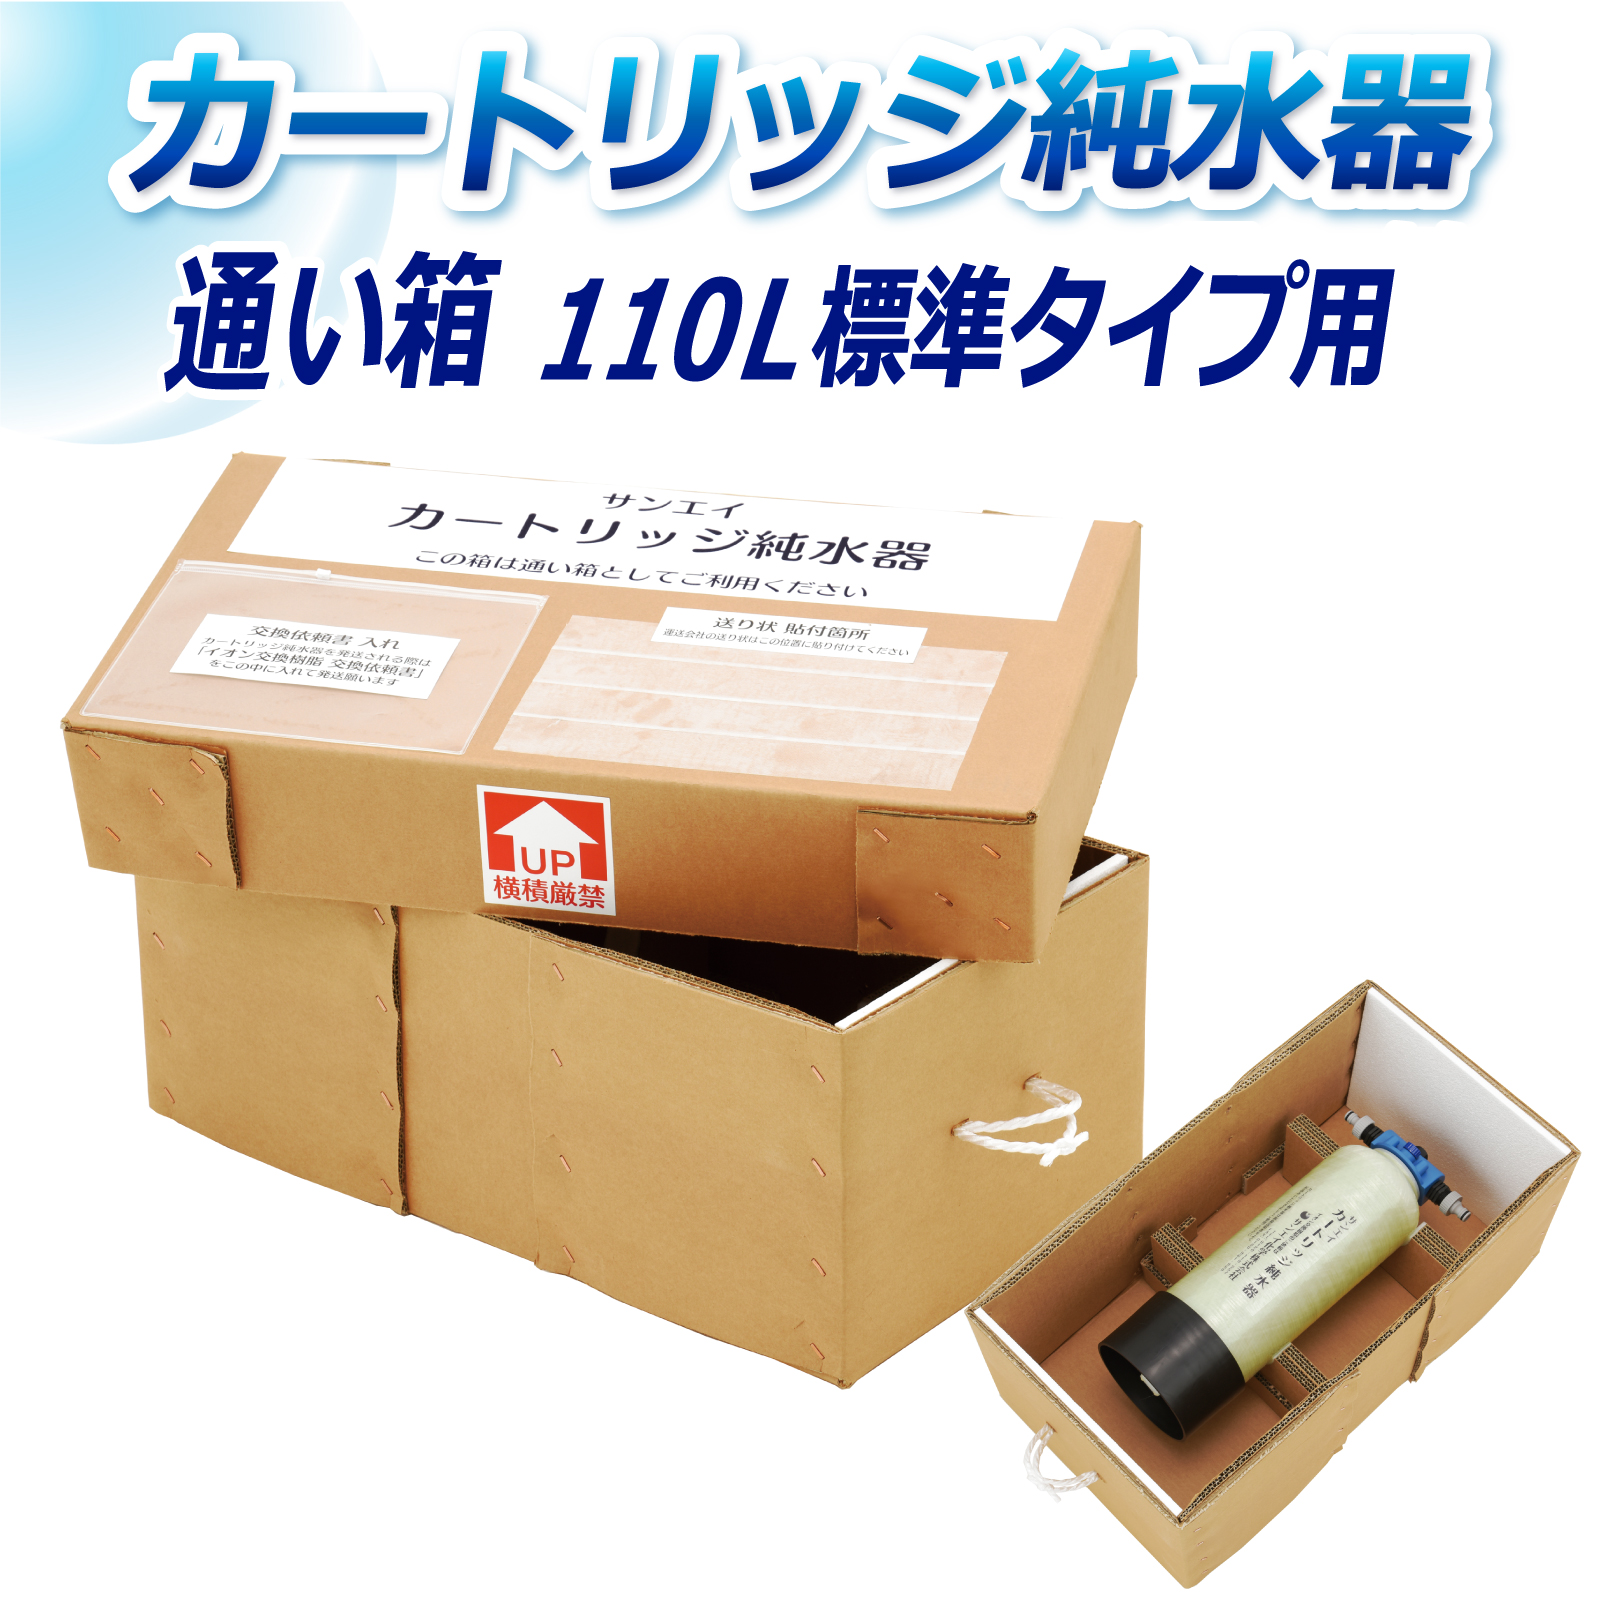 サンエイ化学 カートリッジ純水器 110L用 通い箱 KB-110